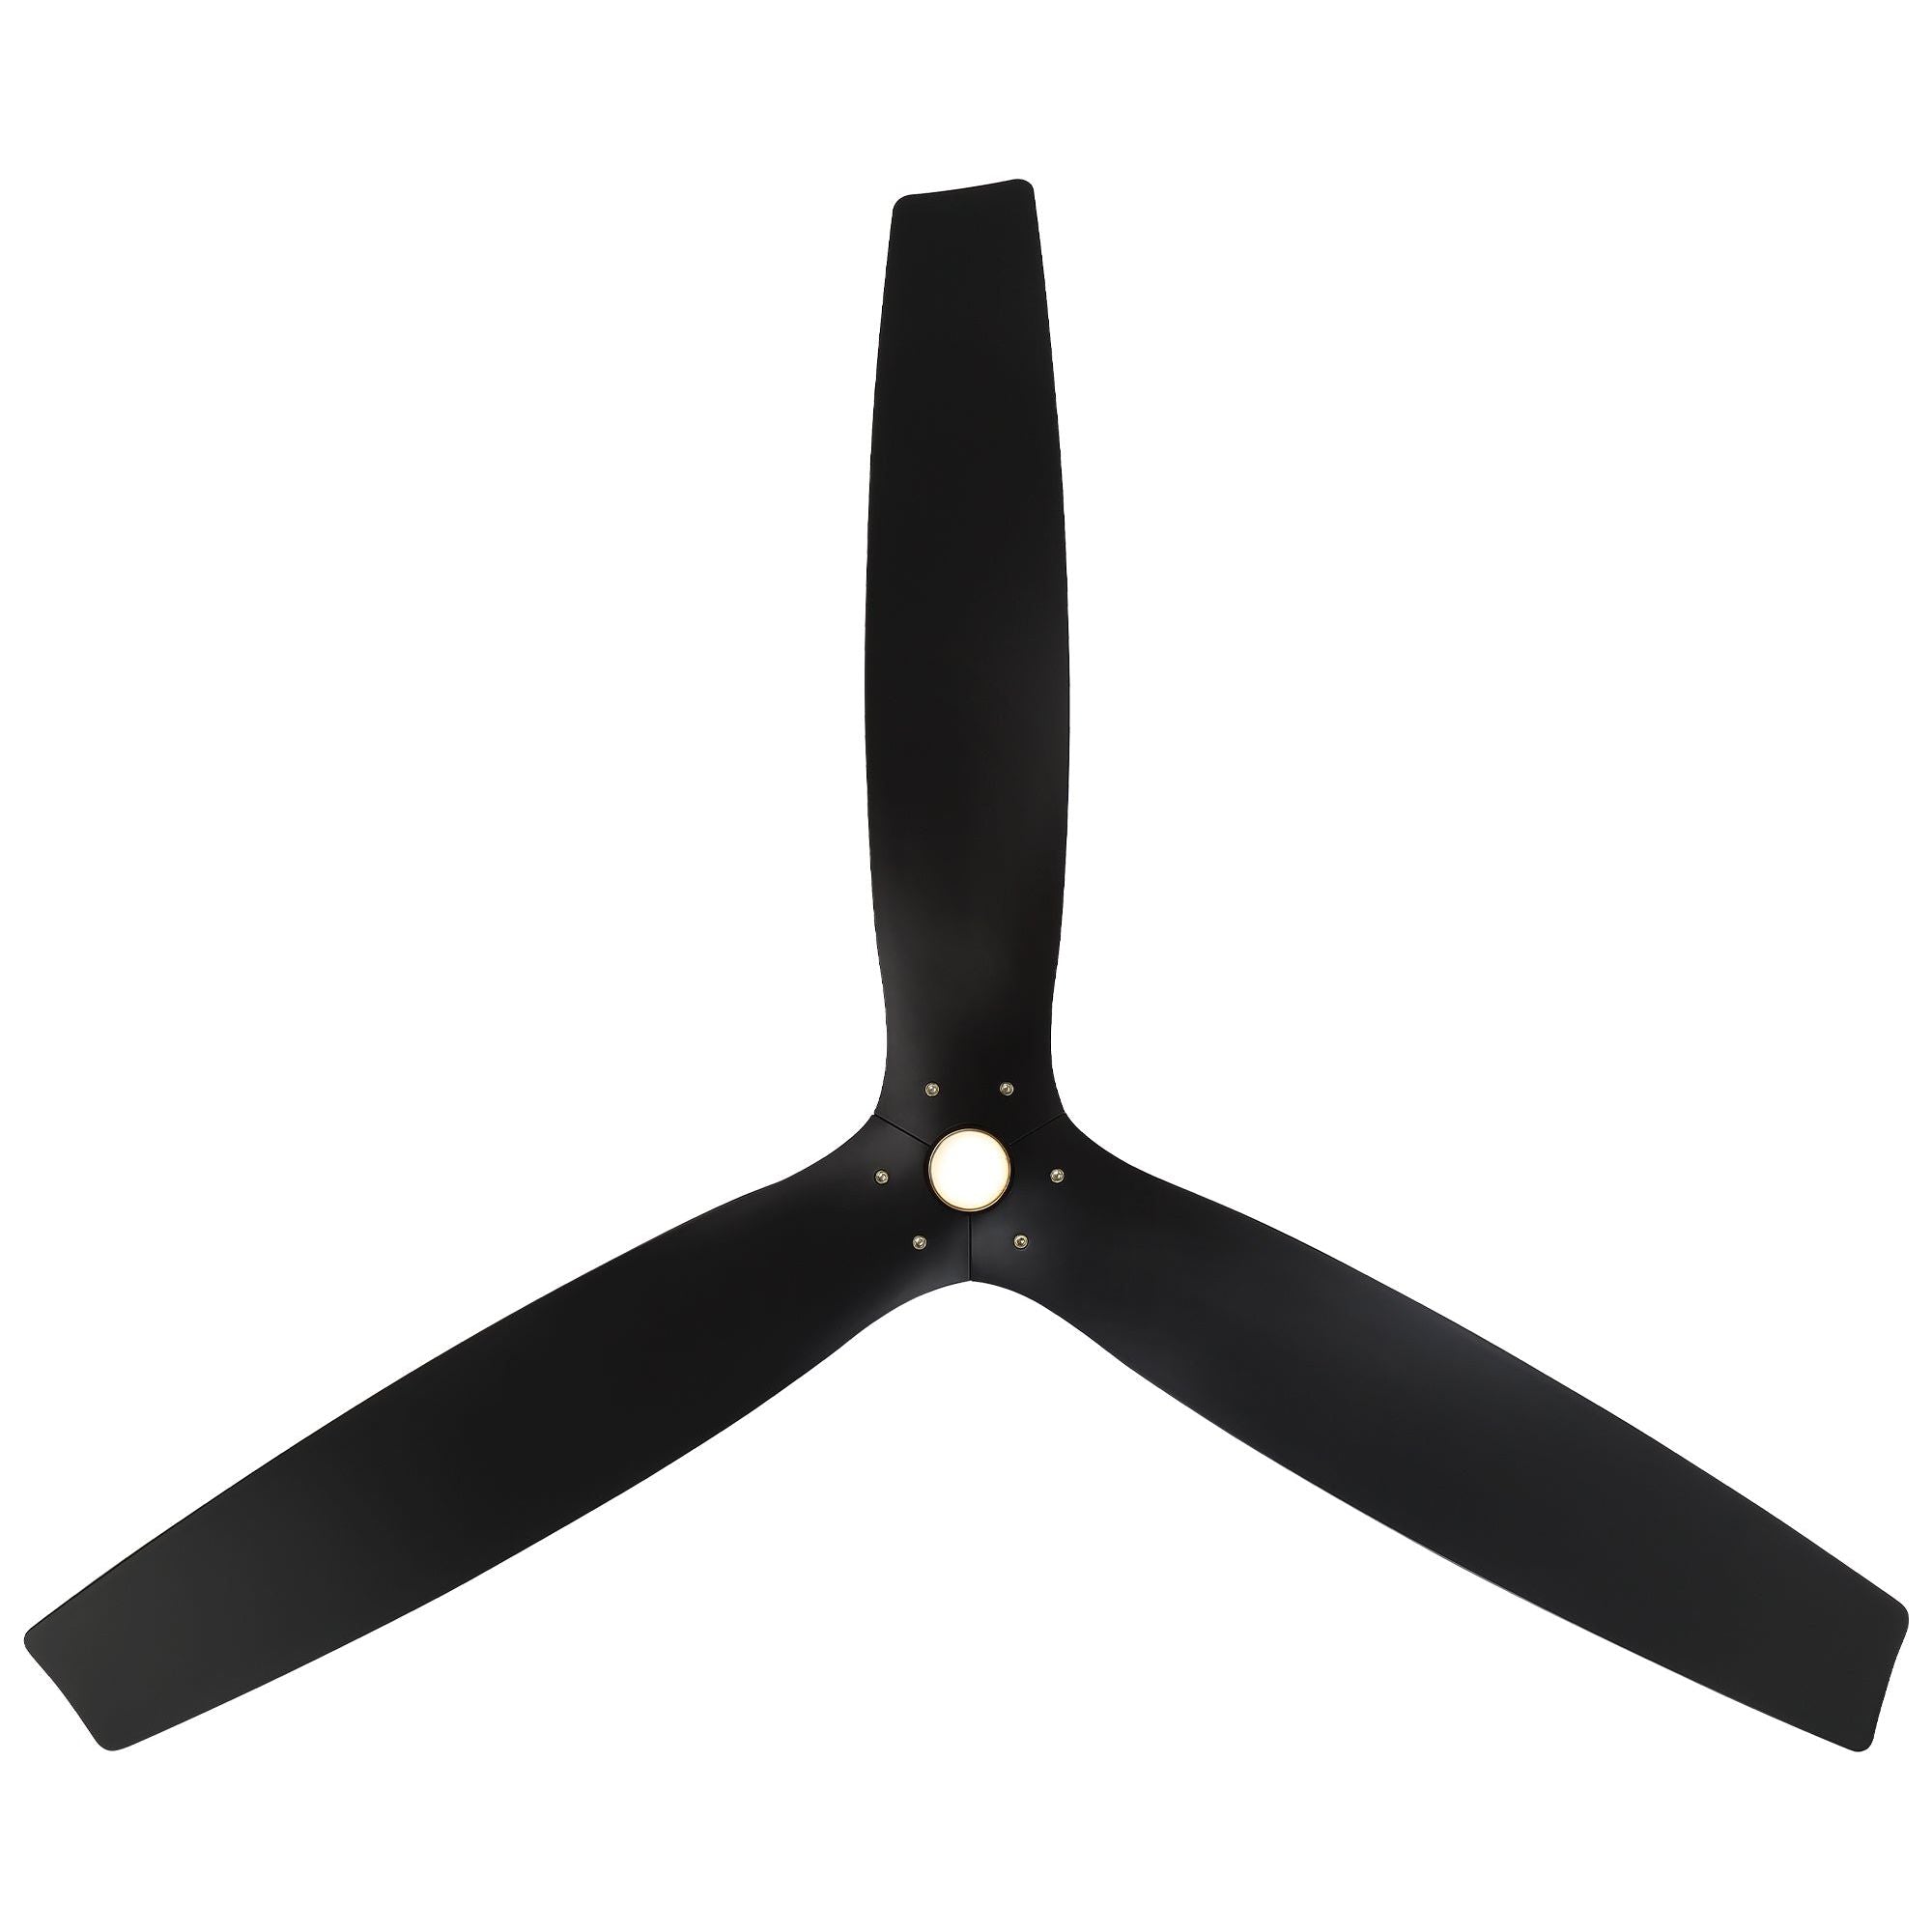 Spinster Indoor/Outdoor 3-Blade 60" LED Smart Ceiling Fan